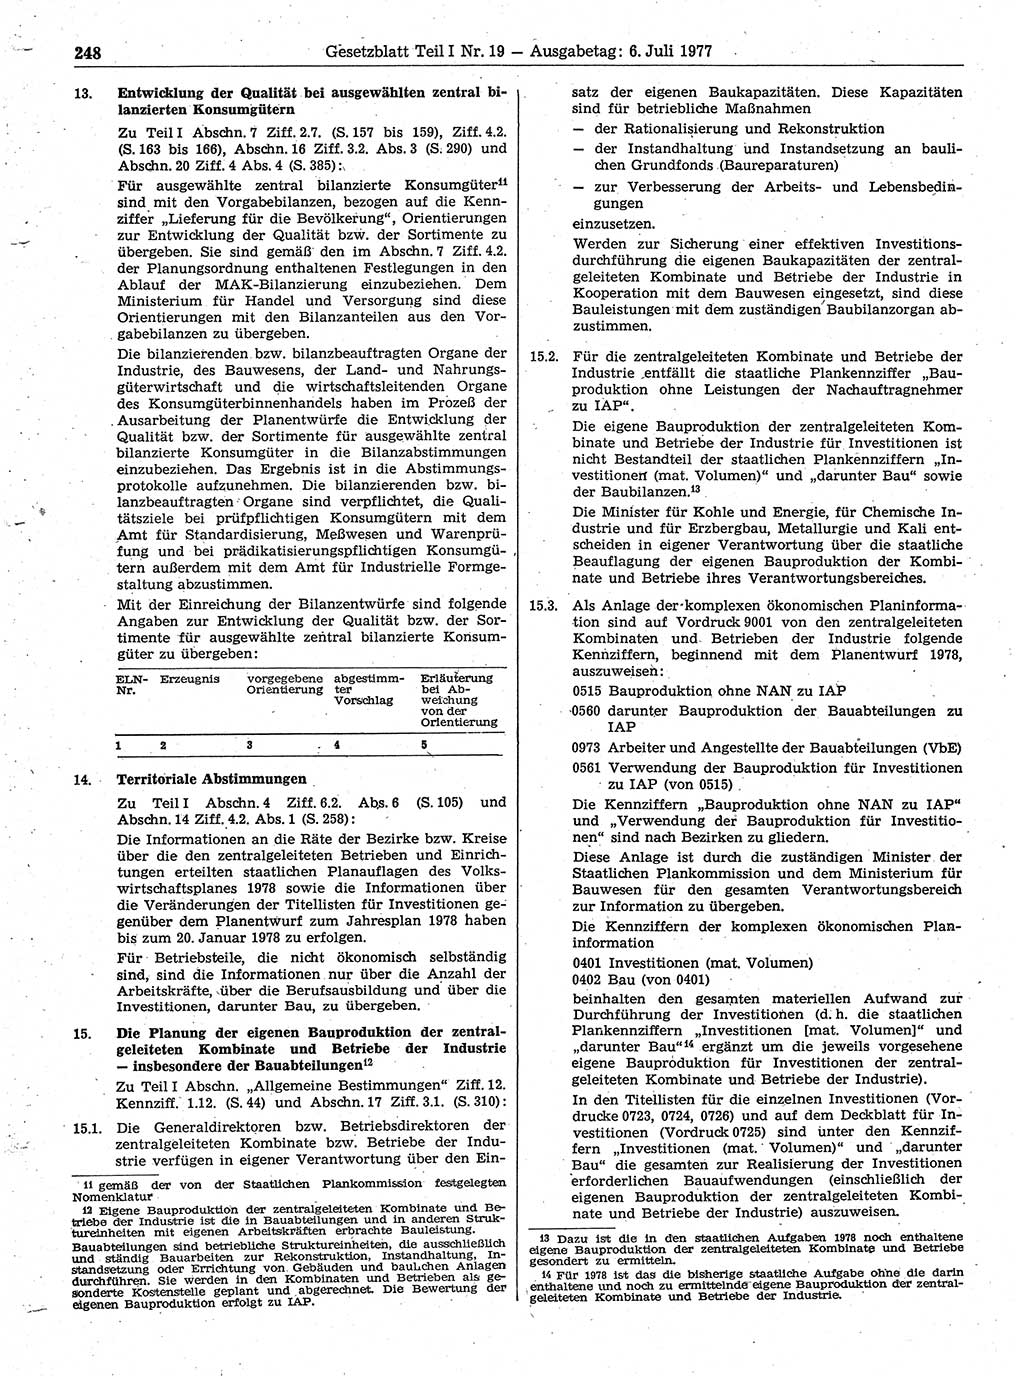 Gesetzblatt (GBl.) der Deutschen Demokratischen Republik (DDR) Teil Ⅰ 1977, Seite 248 (GBl. DDR Ⅰ 1977, S. 248)